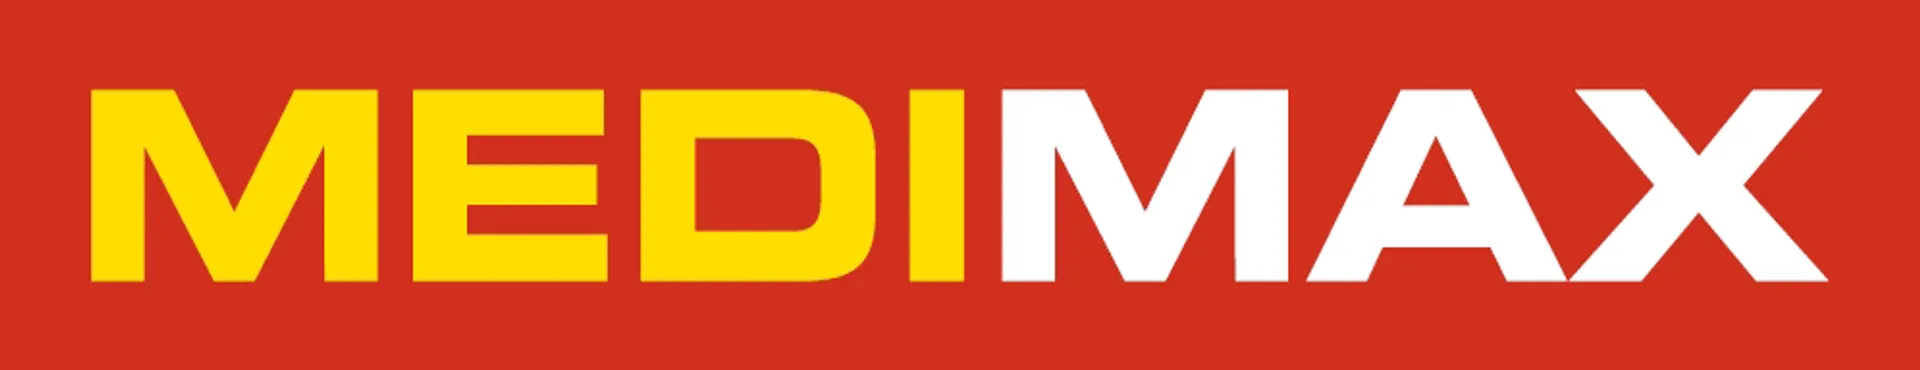 MEDIMAX logo